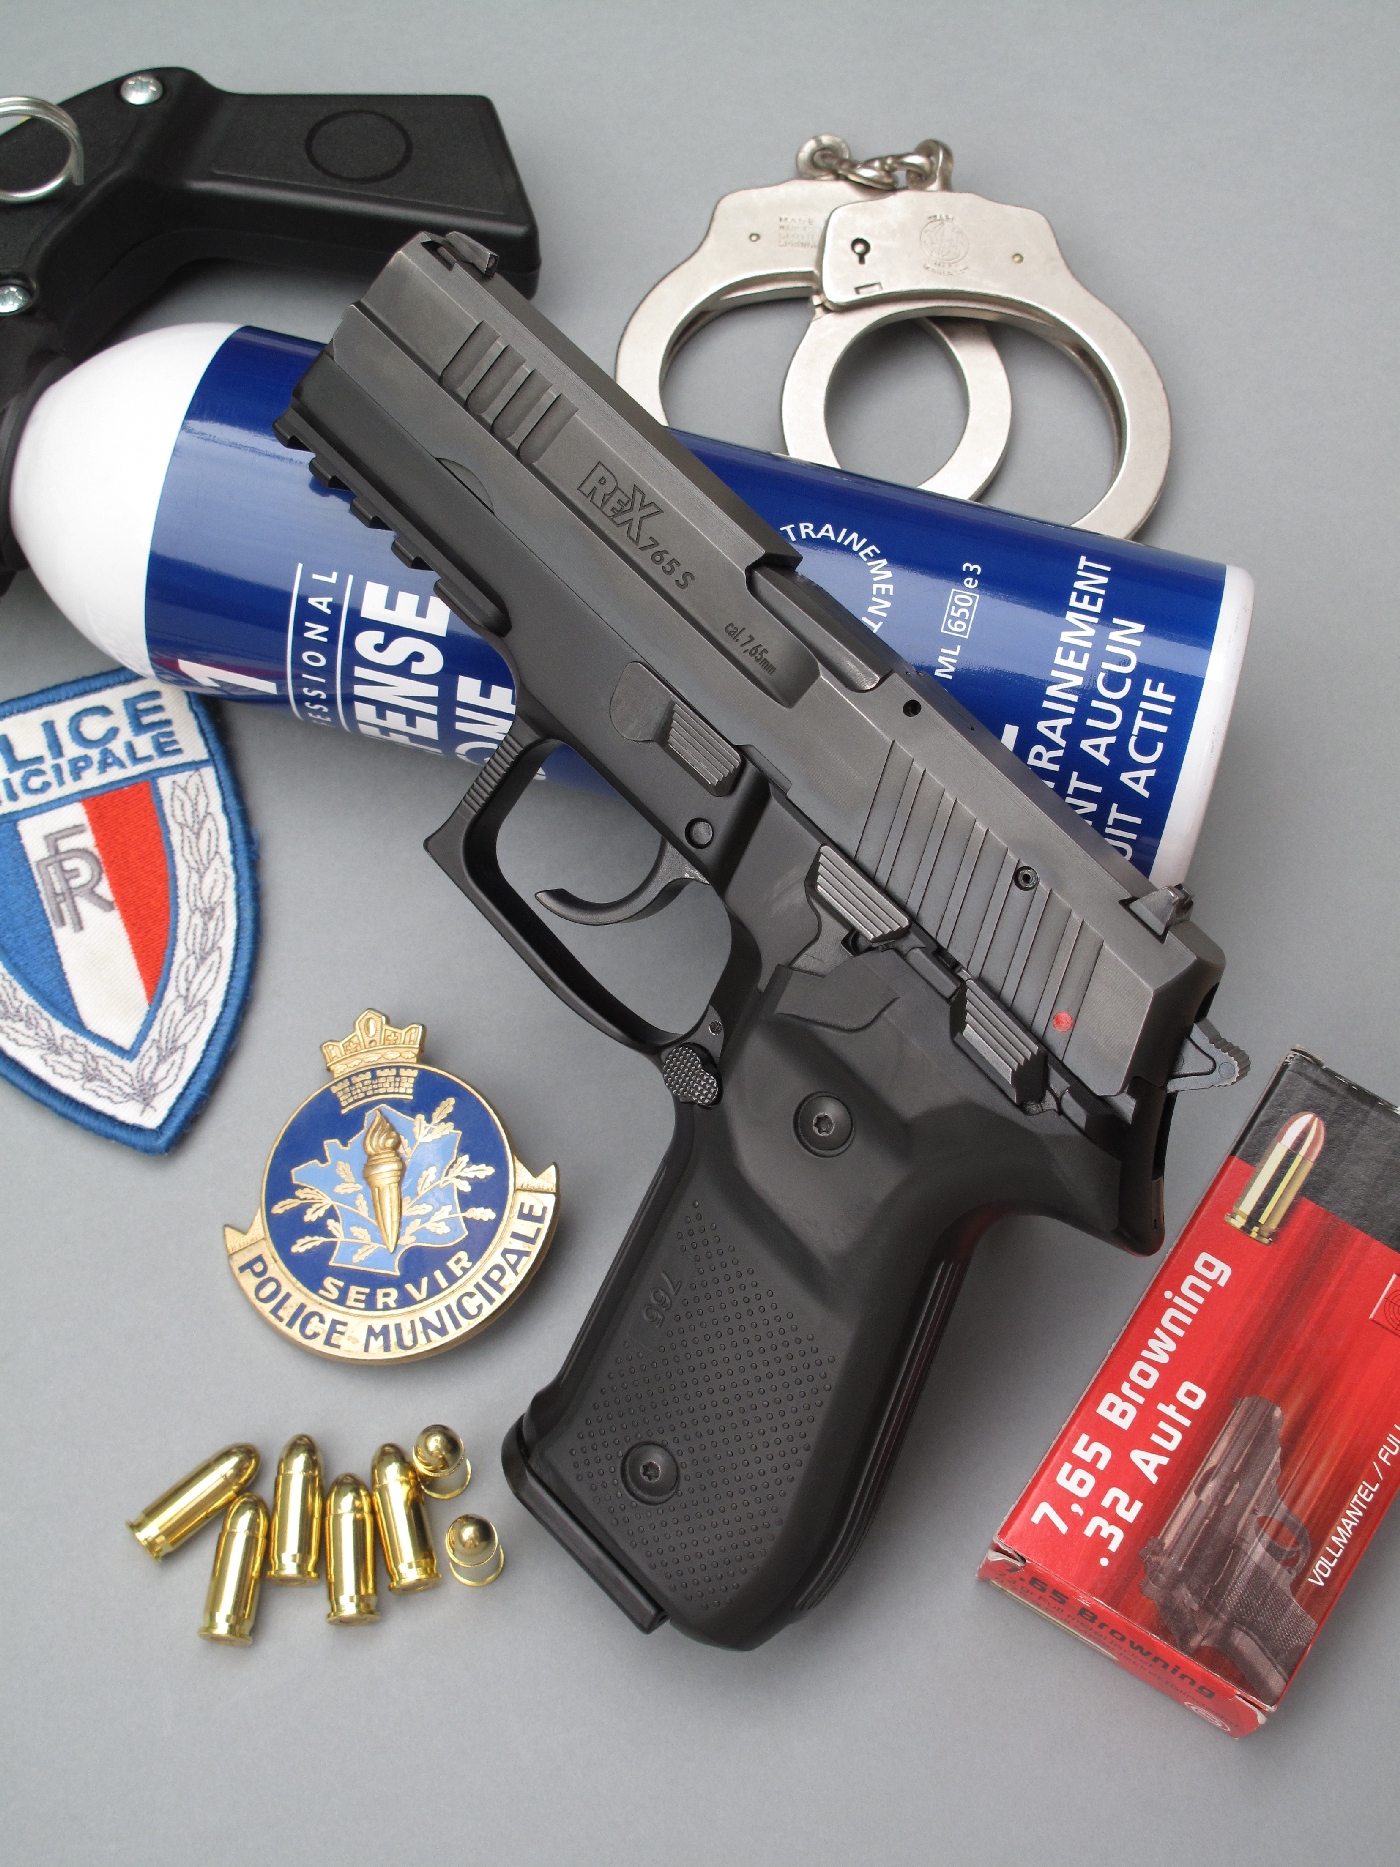 Ce pistolet semi-automatique de calibre 7,65 mm est accompagné ici par quelques accessoires évocateurs de son utilisation par les forces de la Police Municipale.